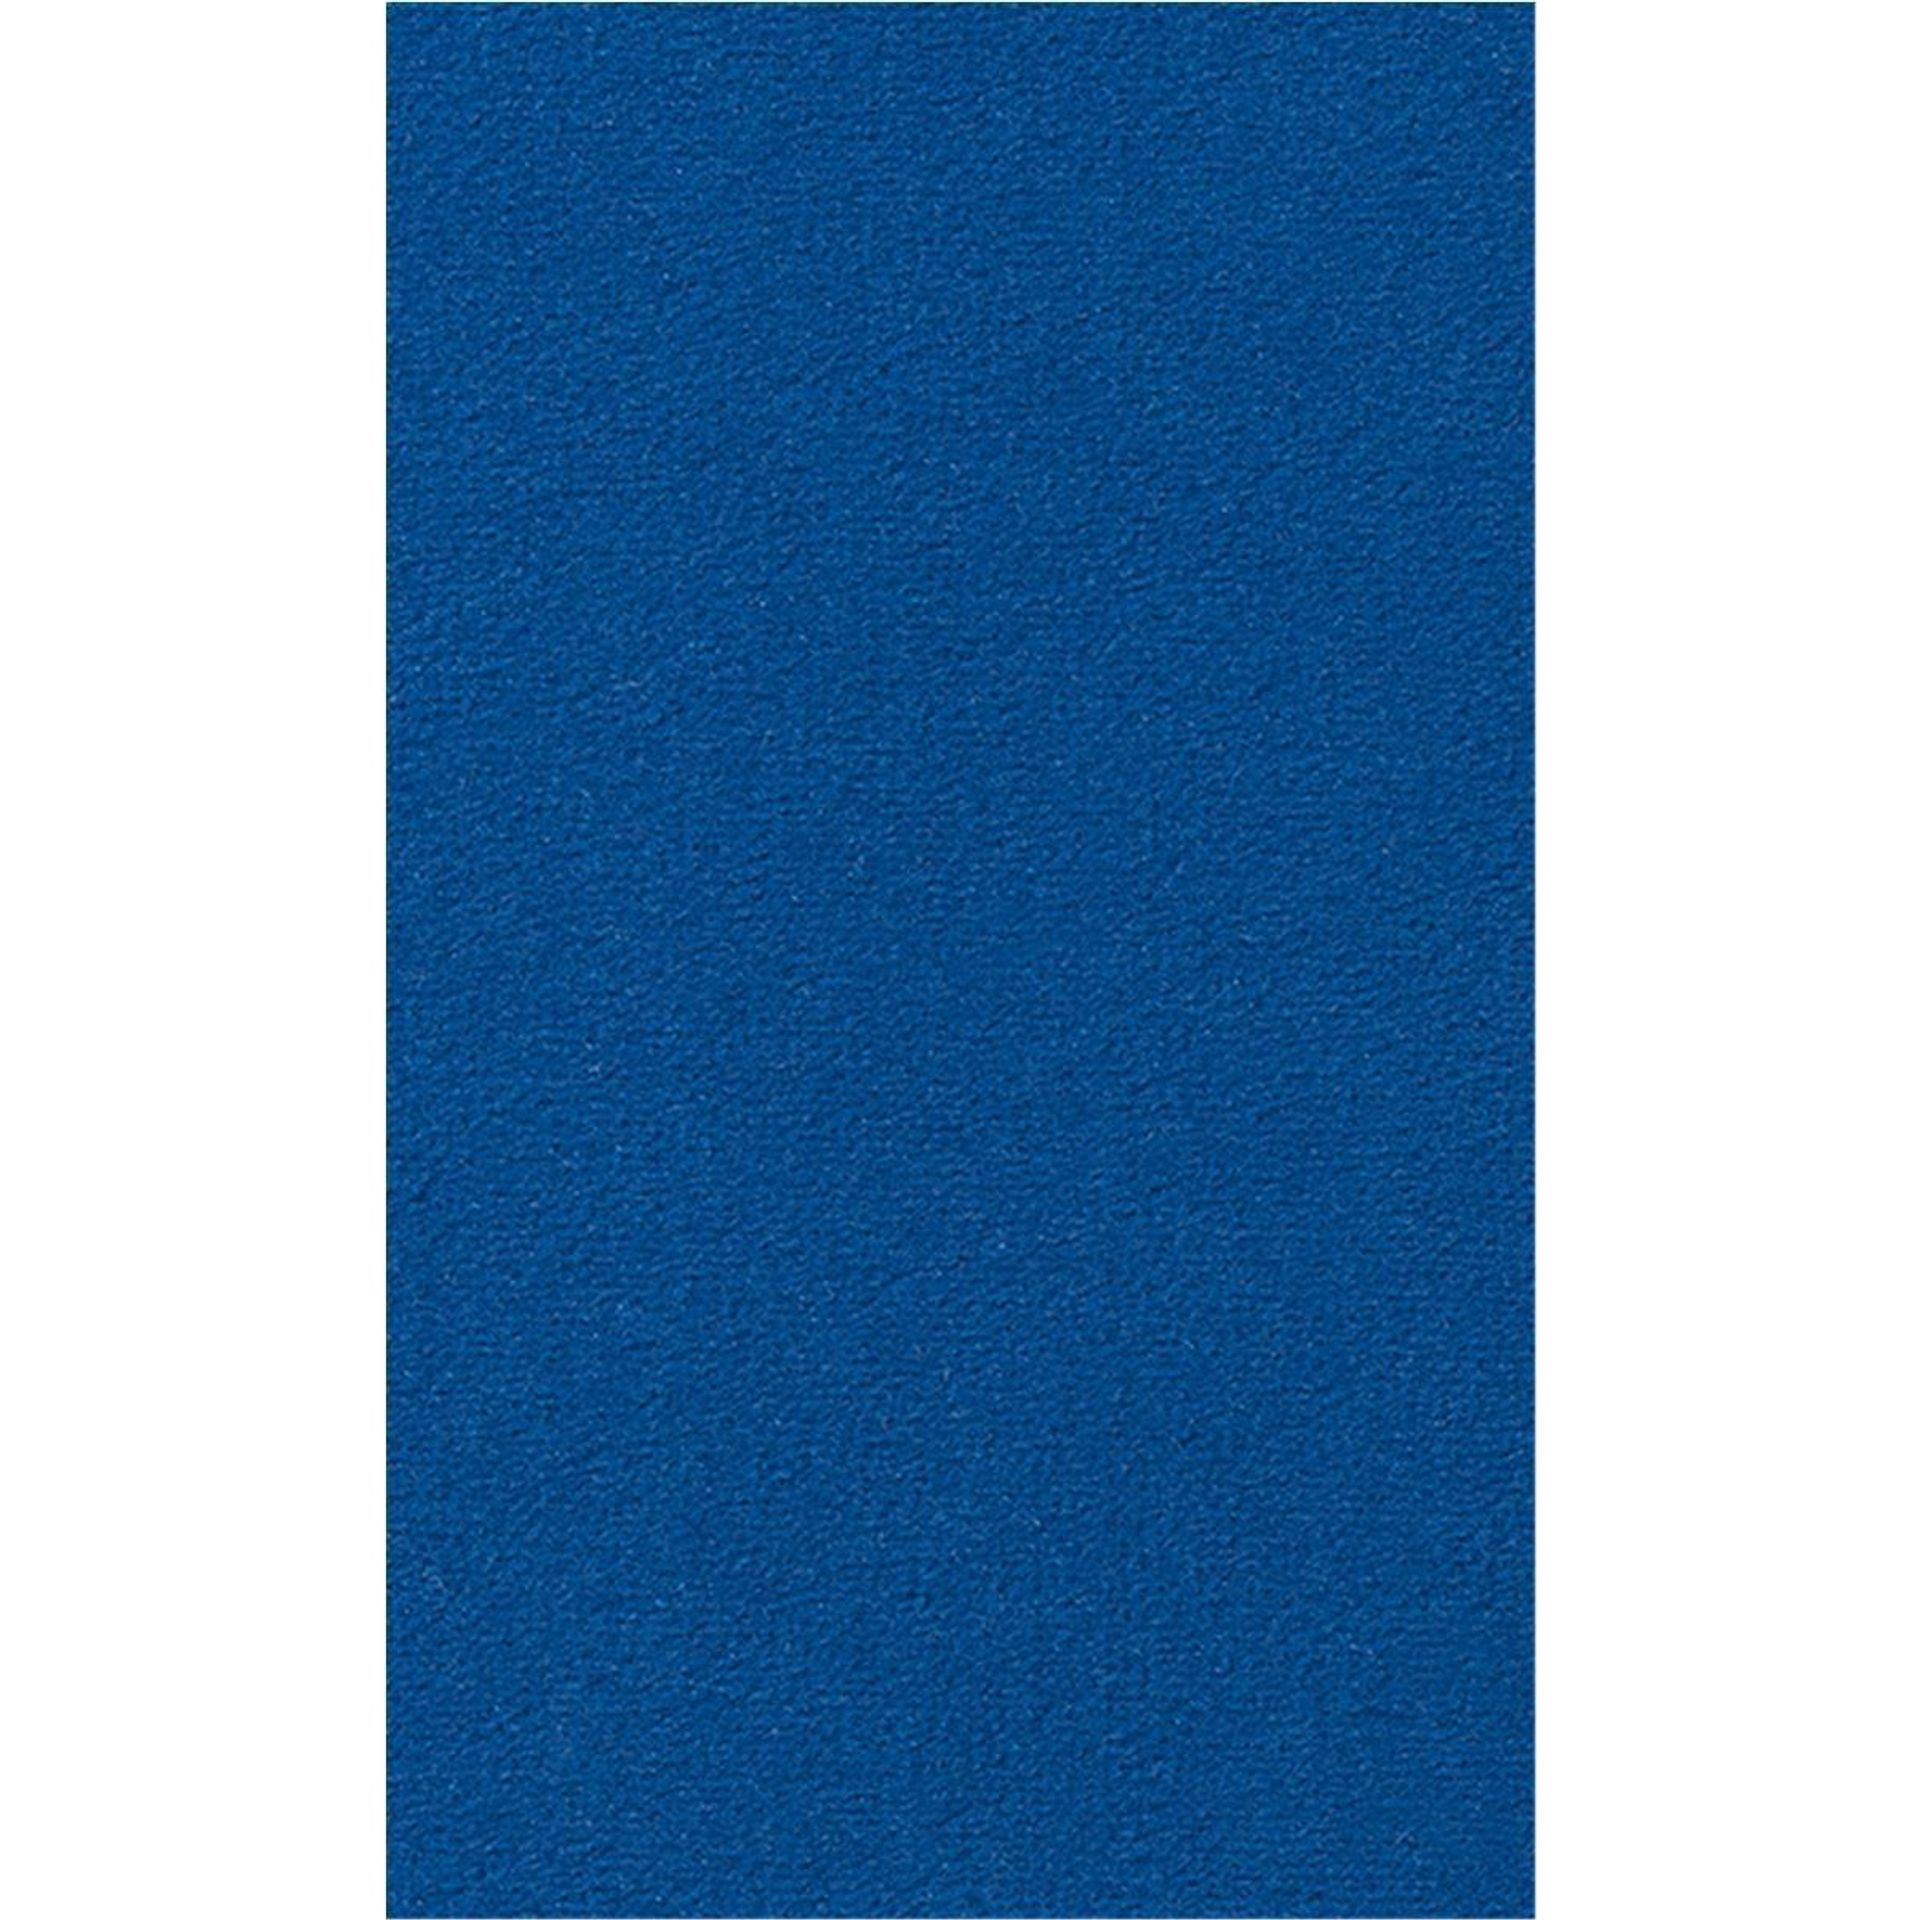 Teppichboden Vorwerk Passion 1000 MODENA Velours Blau 3N55 - Rollenbreite 500 cm